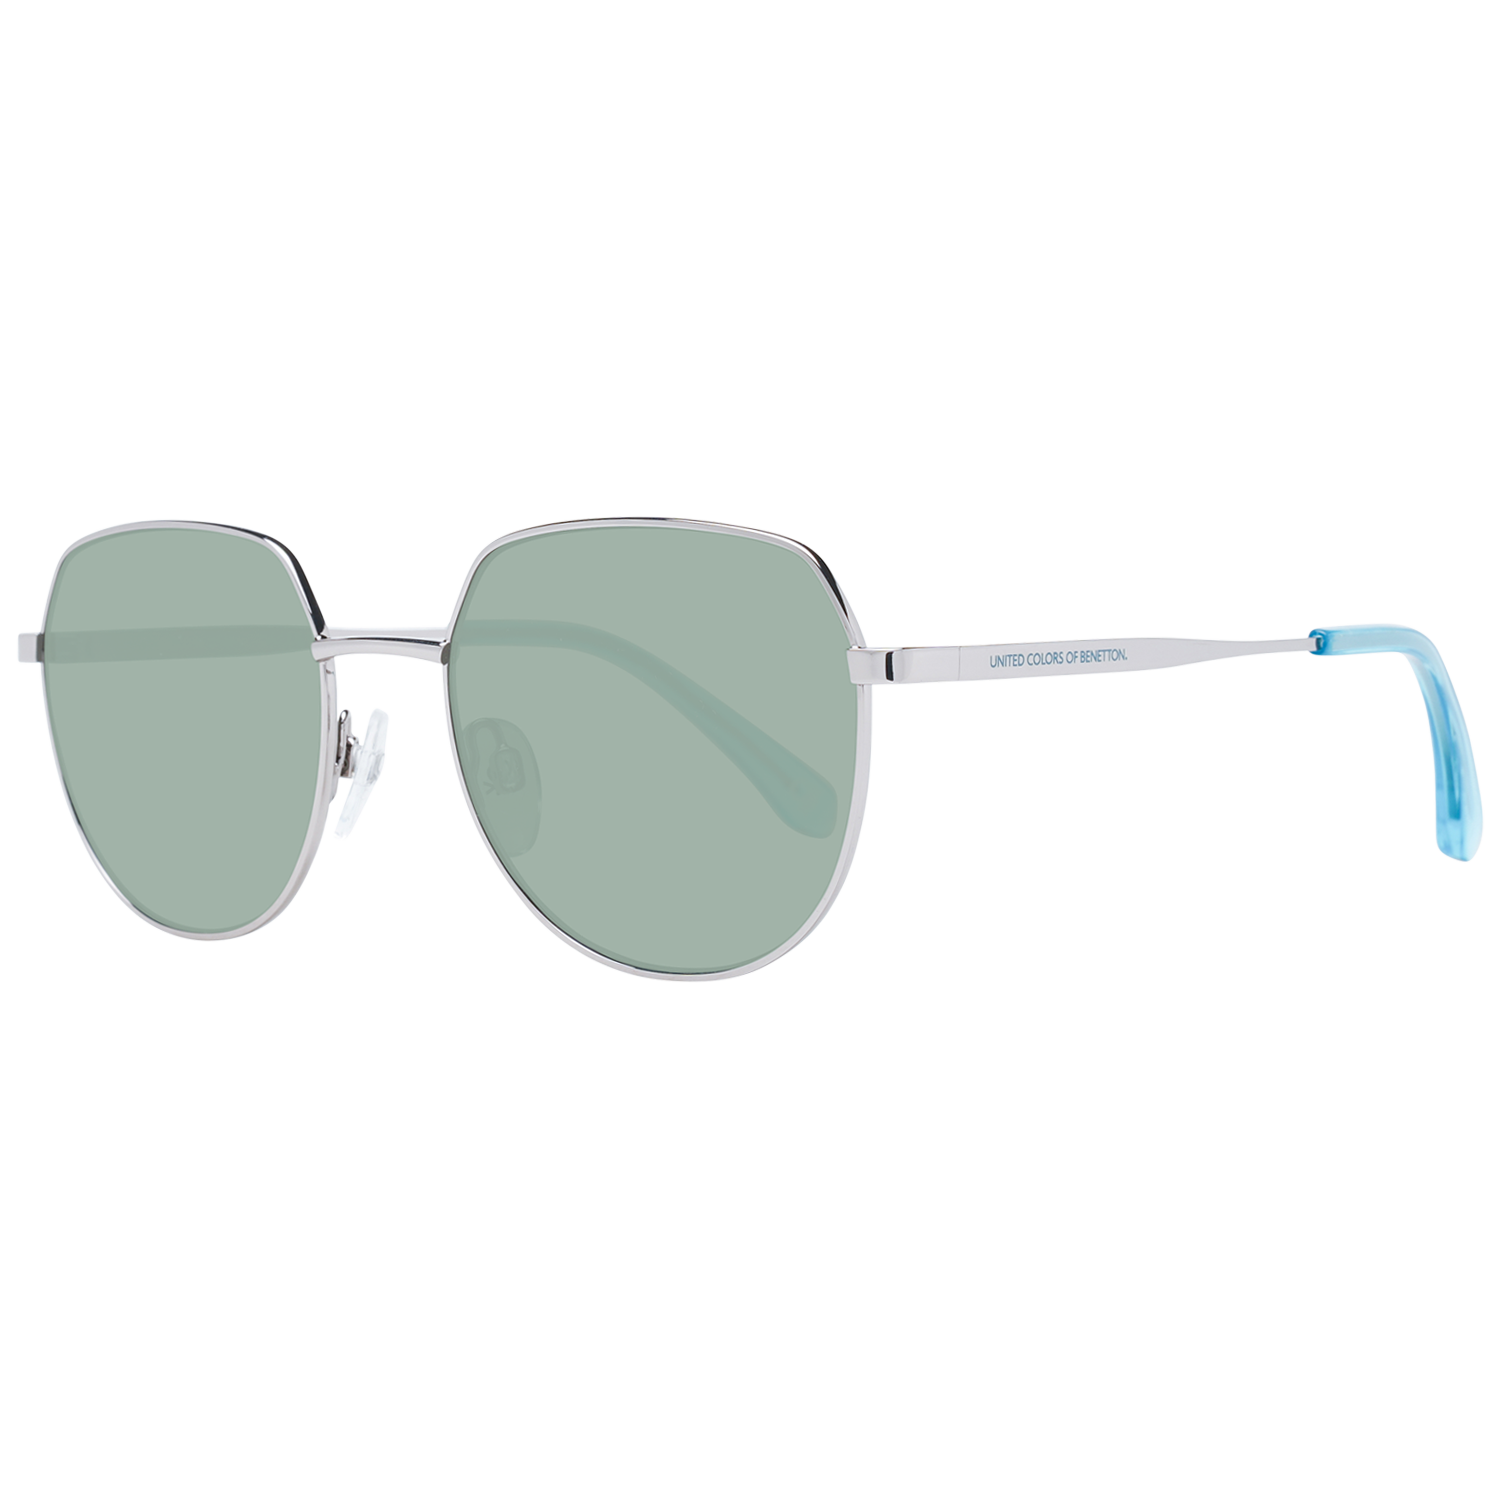 Dámské sluneční brýle Benetton BE7029 920 51